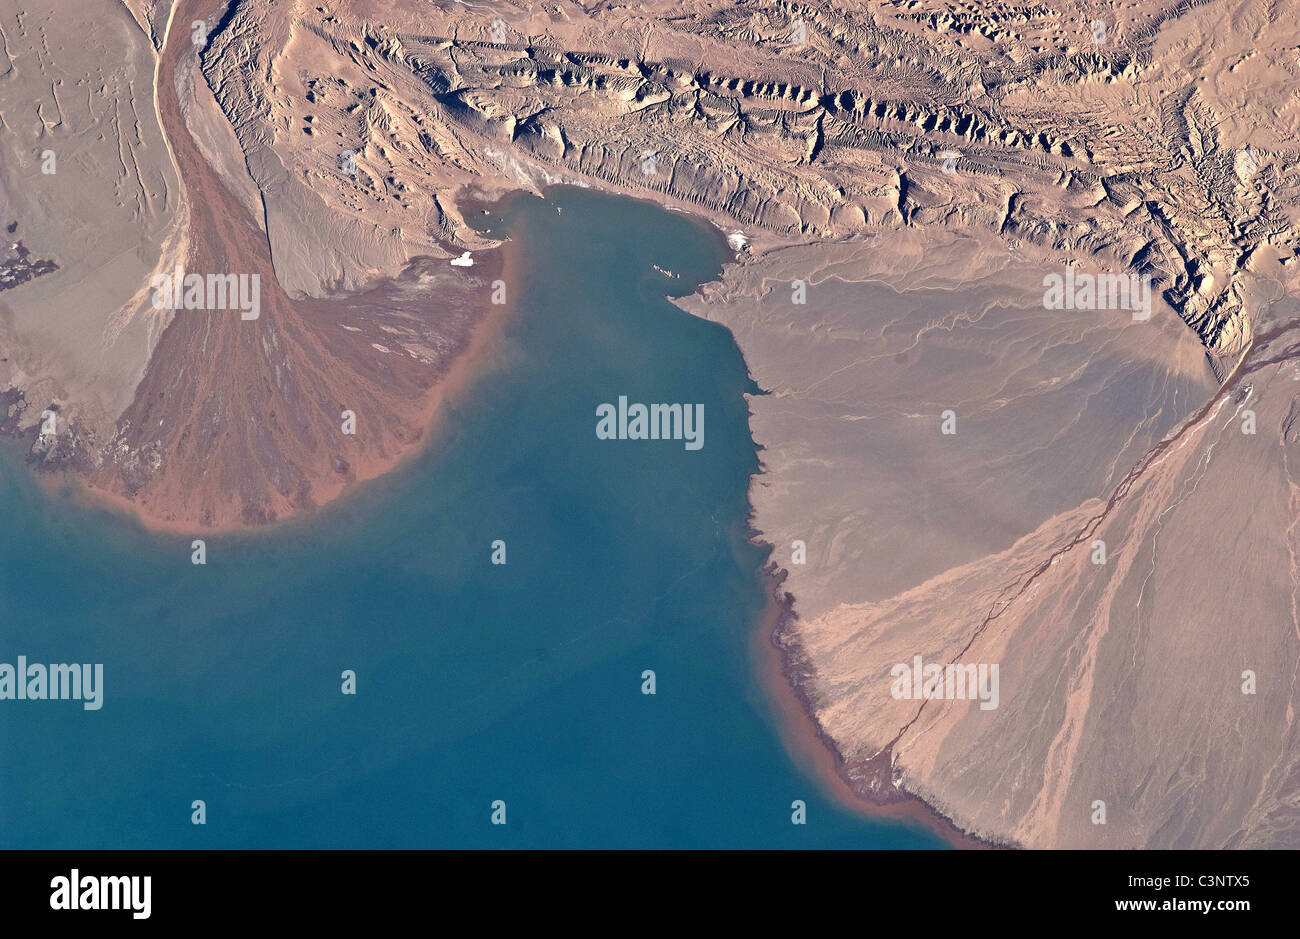 River Deltas, Lake Ayakum, Tibet Stock Photo